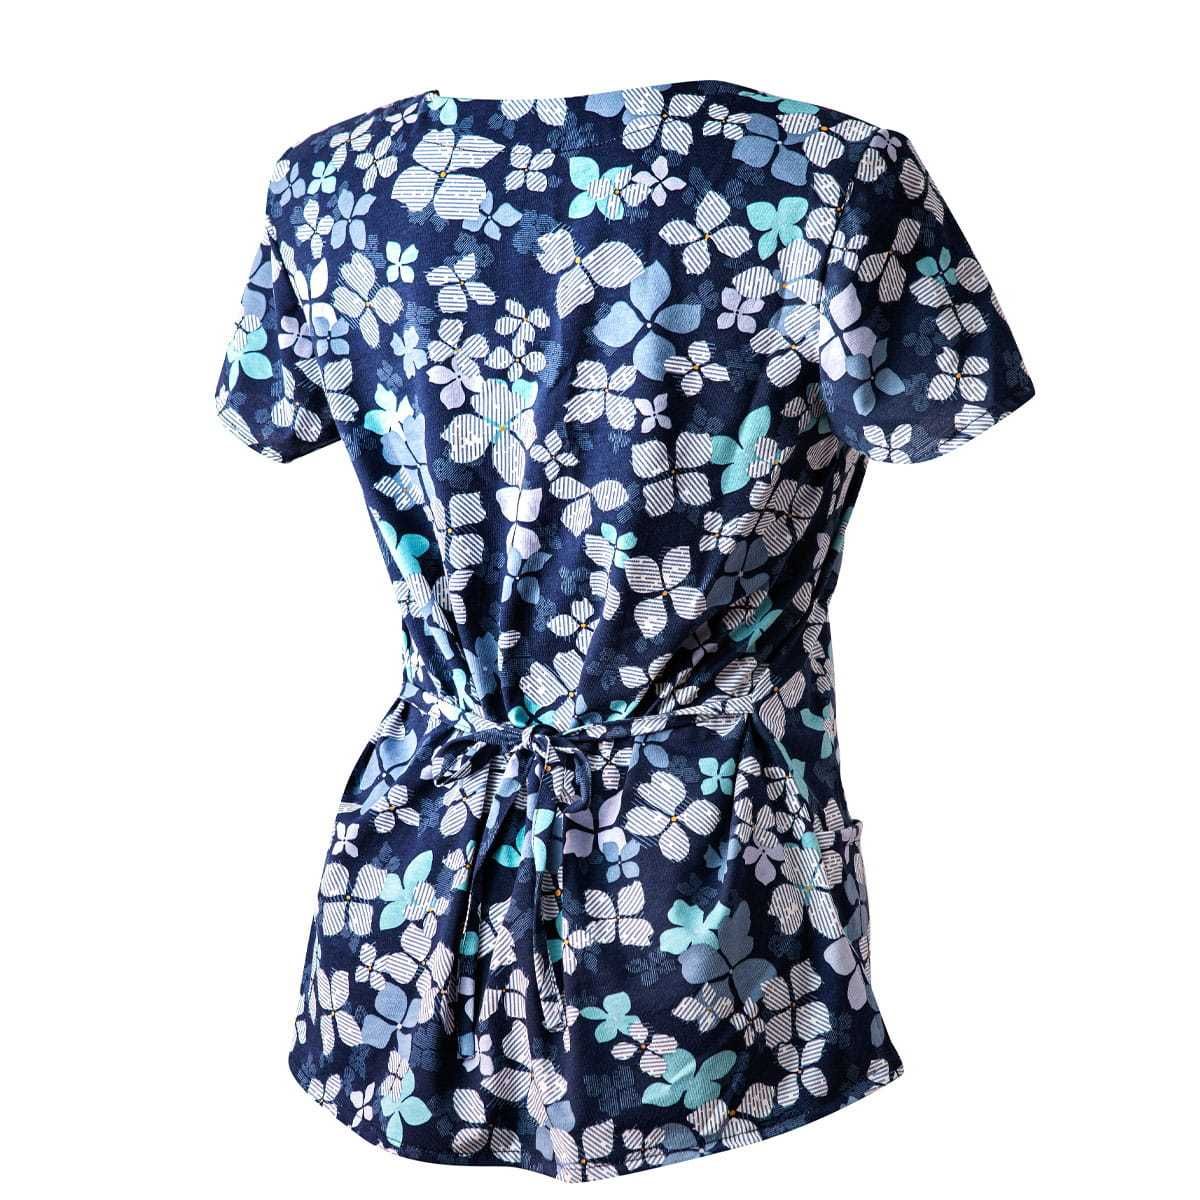 Bluza Medyczna Granatowa Koszulka Bawełniana Kwiaty niebieskie roz 50